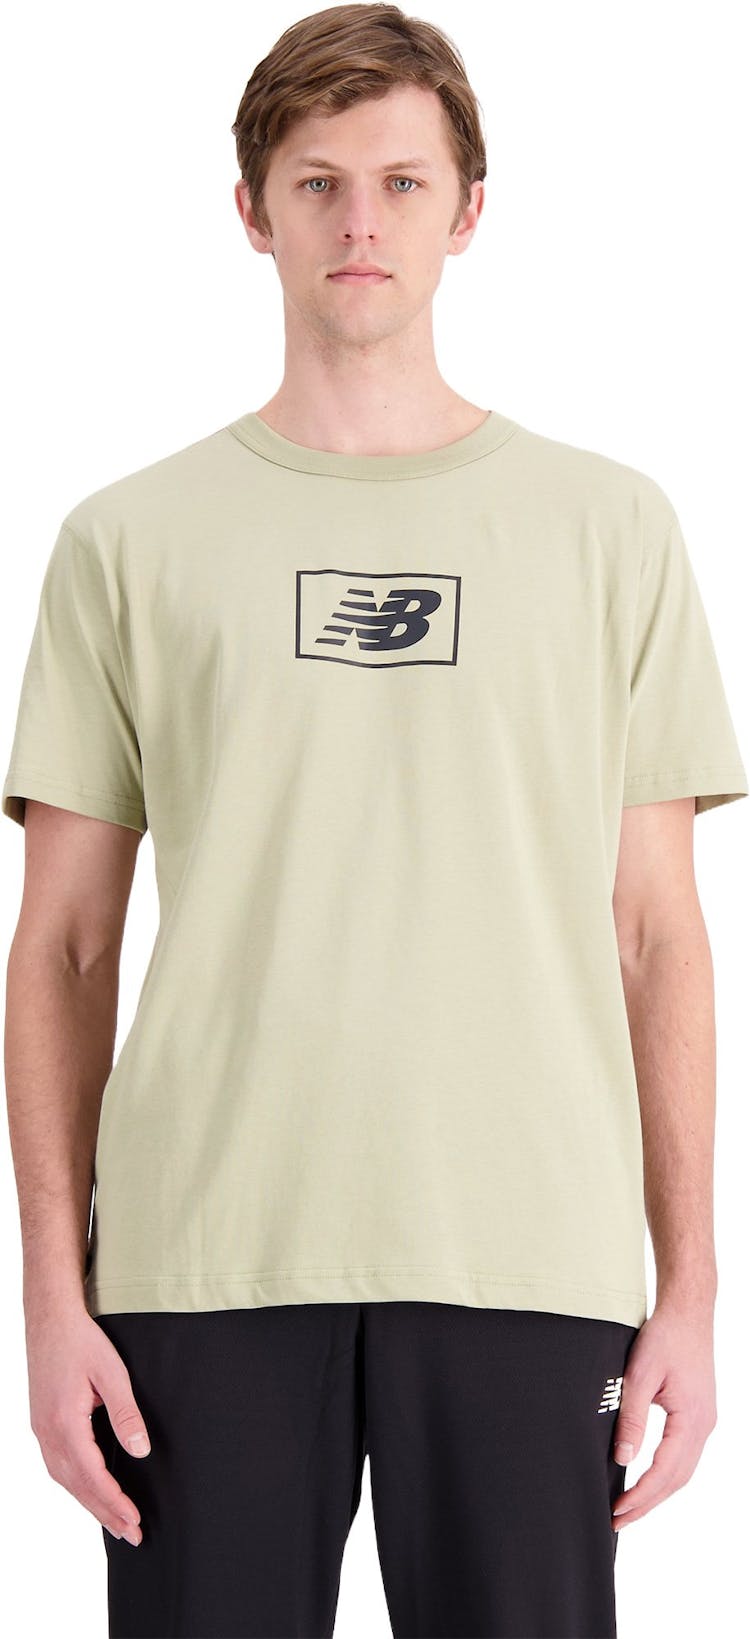 Numéro de l'image de la galerie de produits 1 pour le produit T-shirt au logo Nb Essentials - Homme